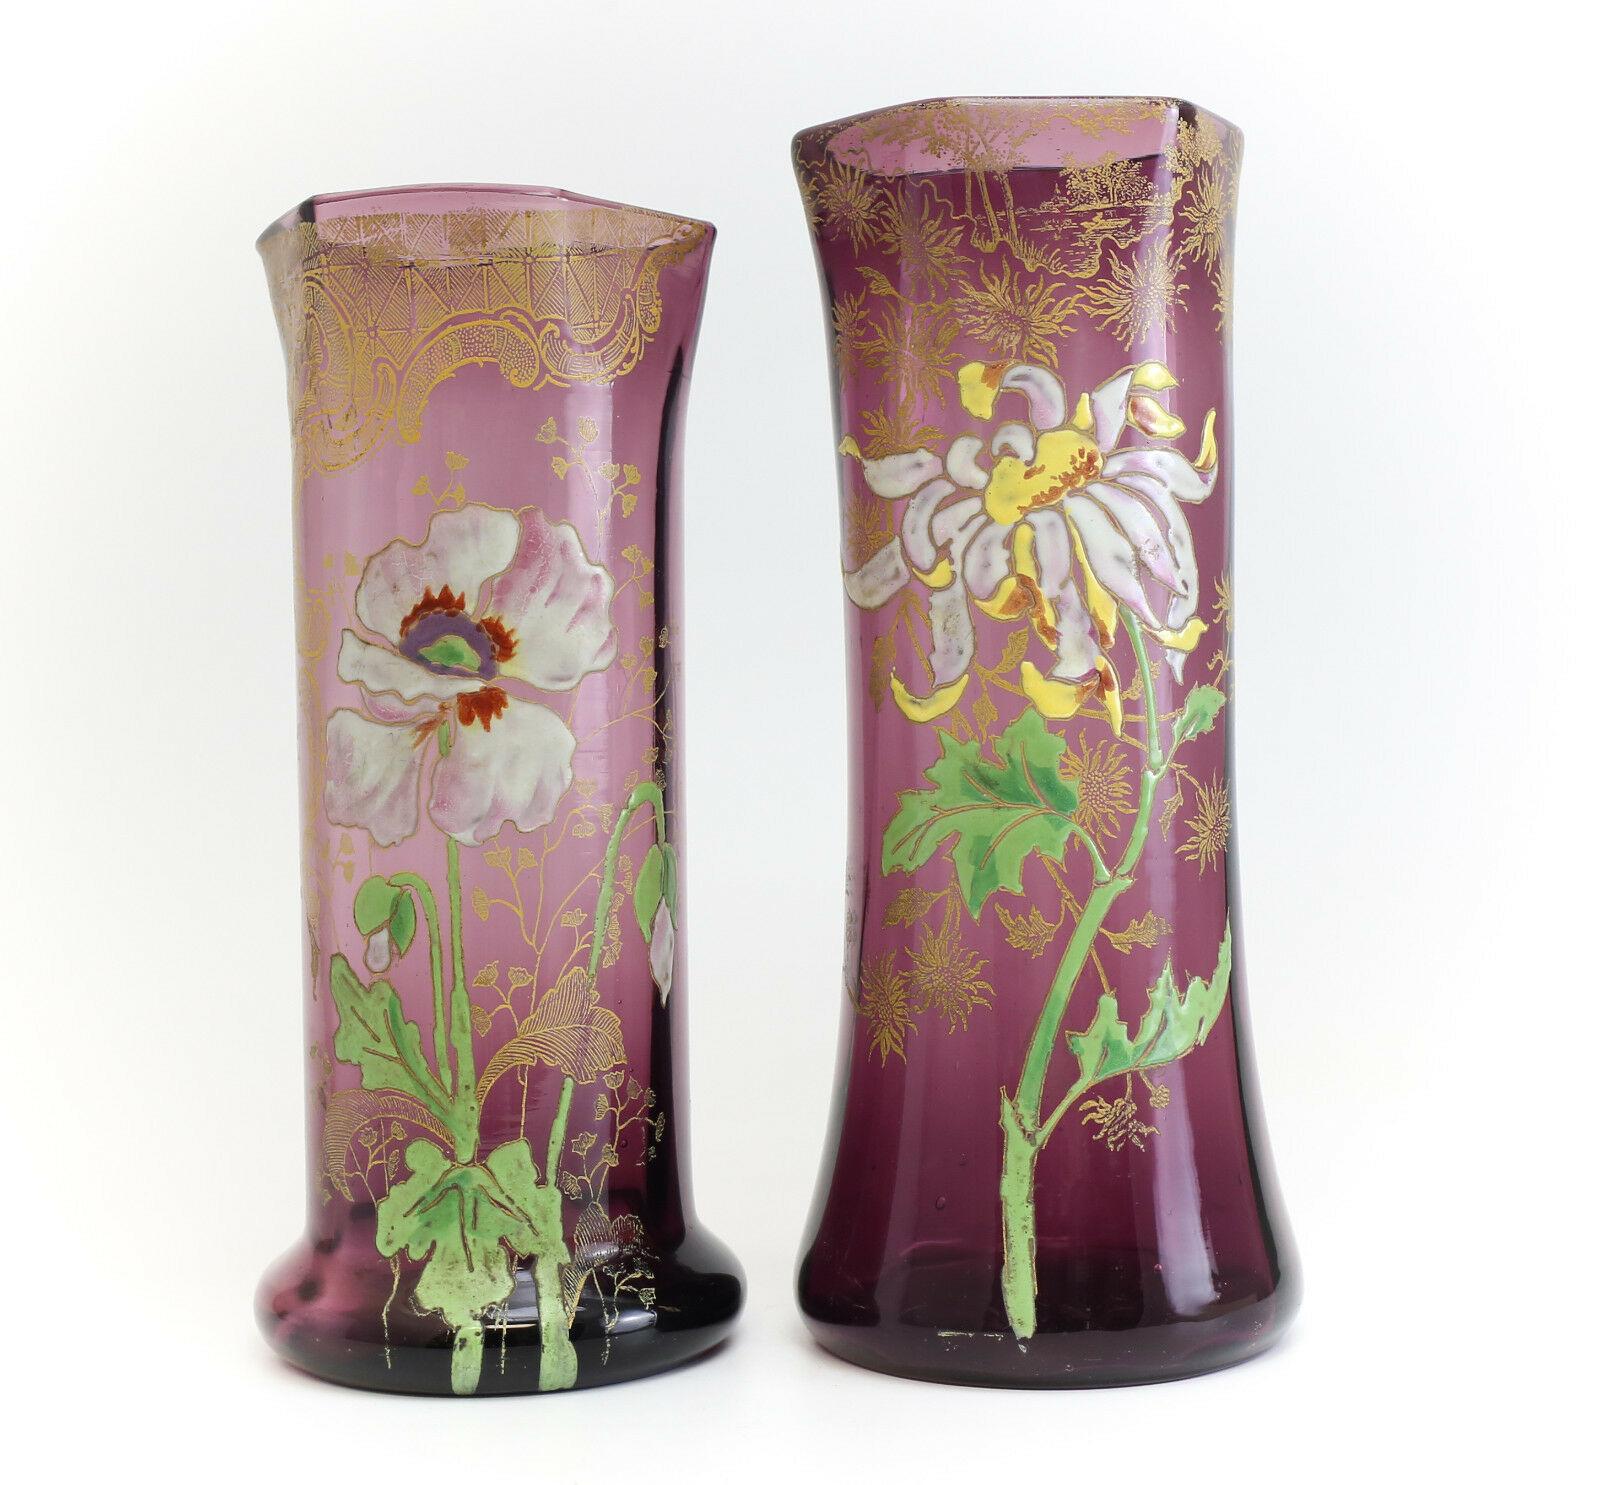 Deux grands vases Mont Joye en verre d'art améthyste - avec des motifs floraux en émail en relief peints à la main et des détails dorés.

Informations complémentaires :
Fait à la main : Oui        
Matériau : Verre
Type : Vase       